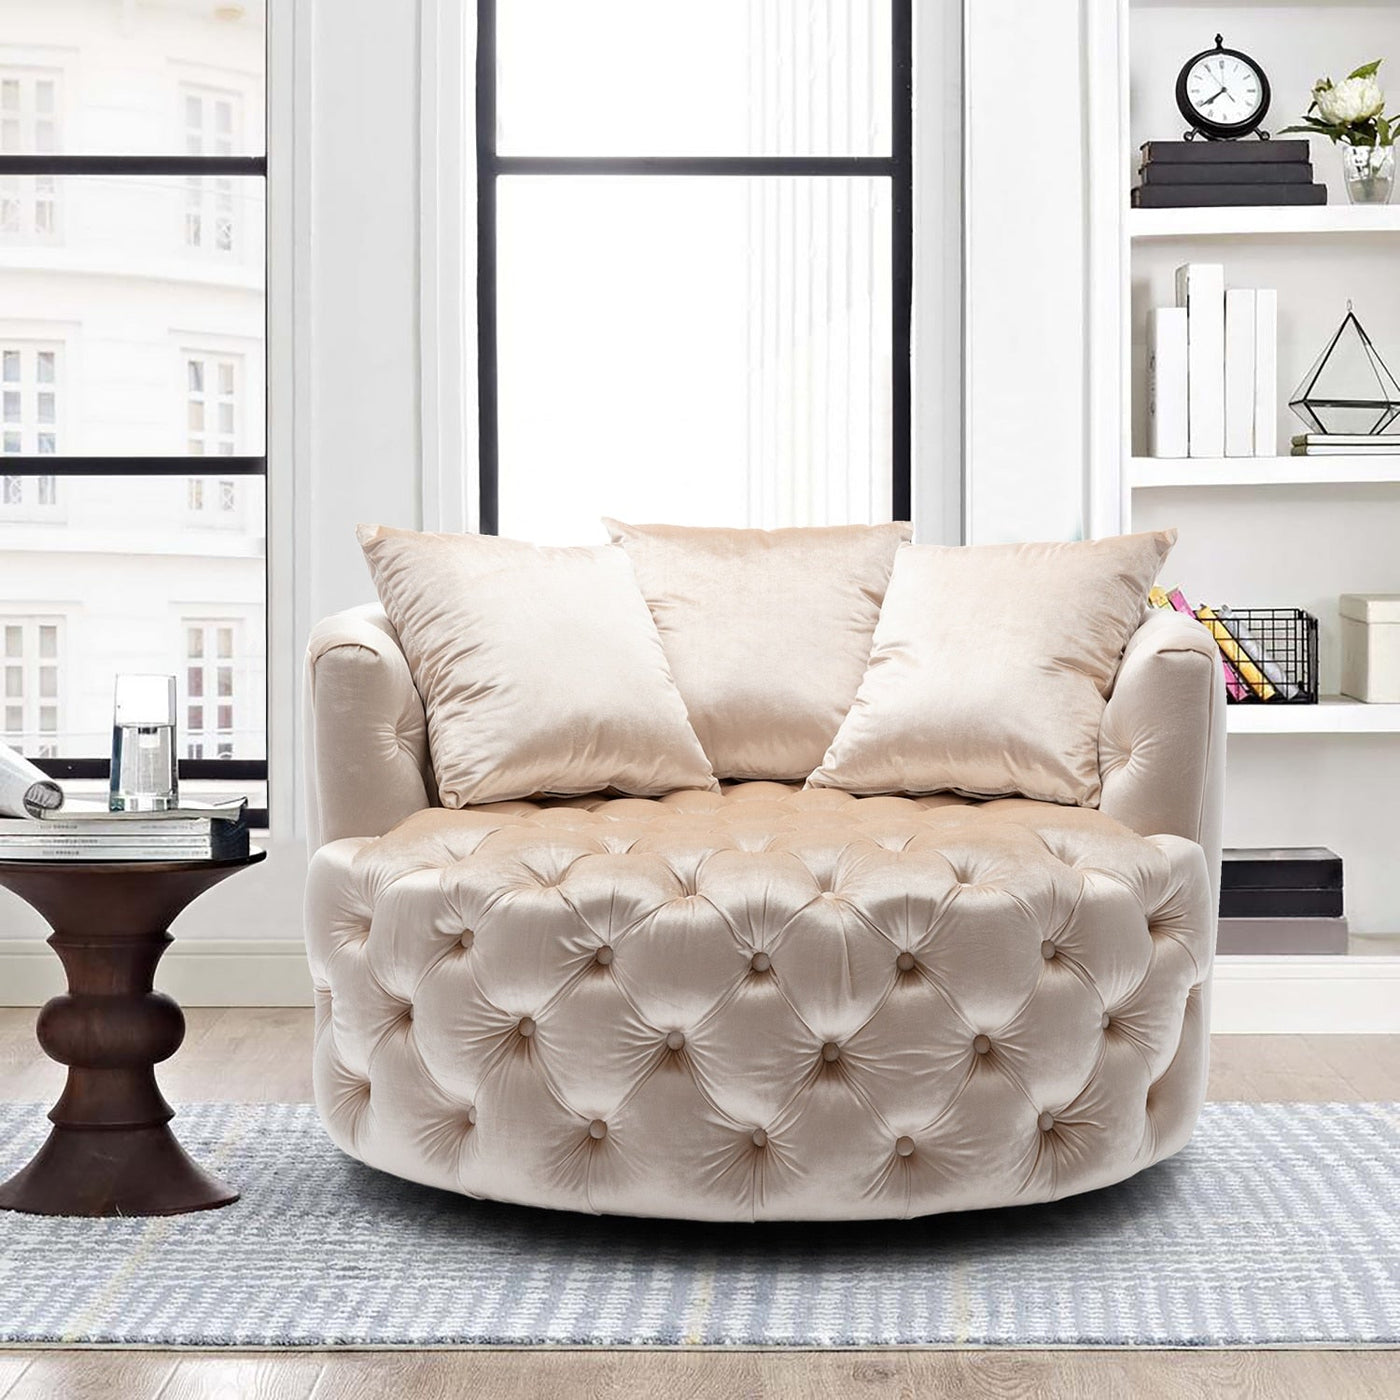 Homio Decor Living Room Velvet / Beige Luxury Button Tufted Round Leisure Chair